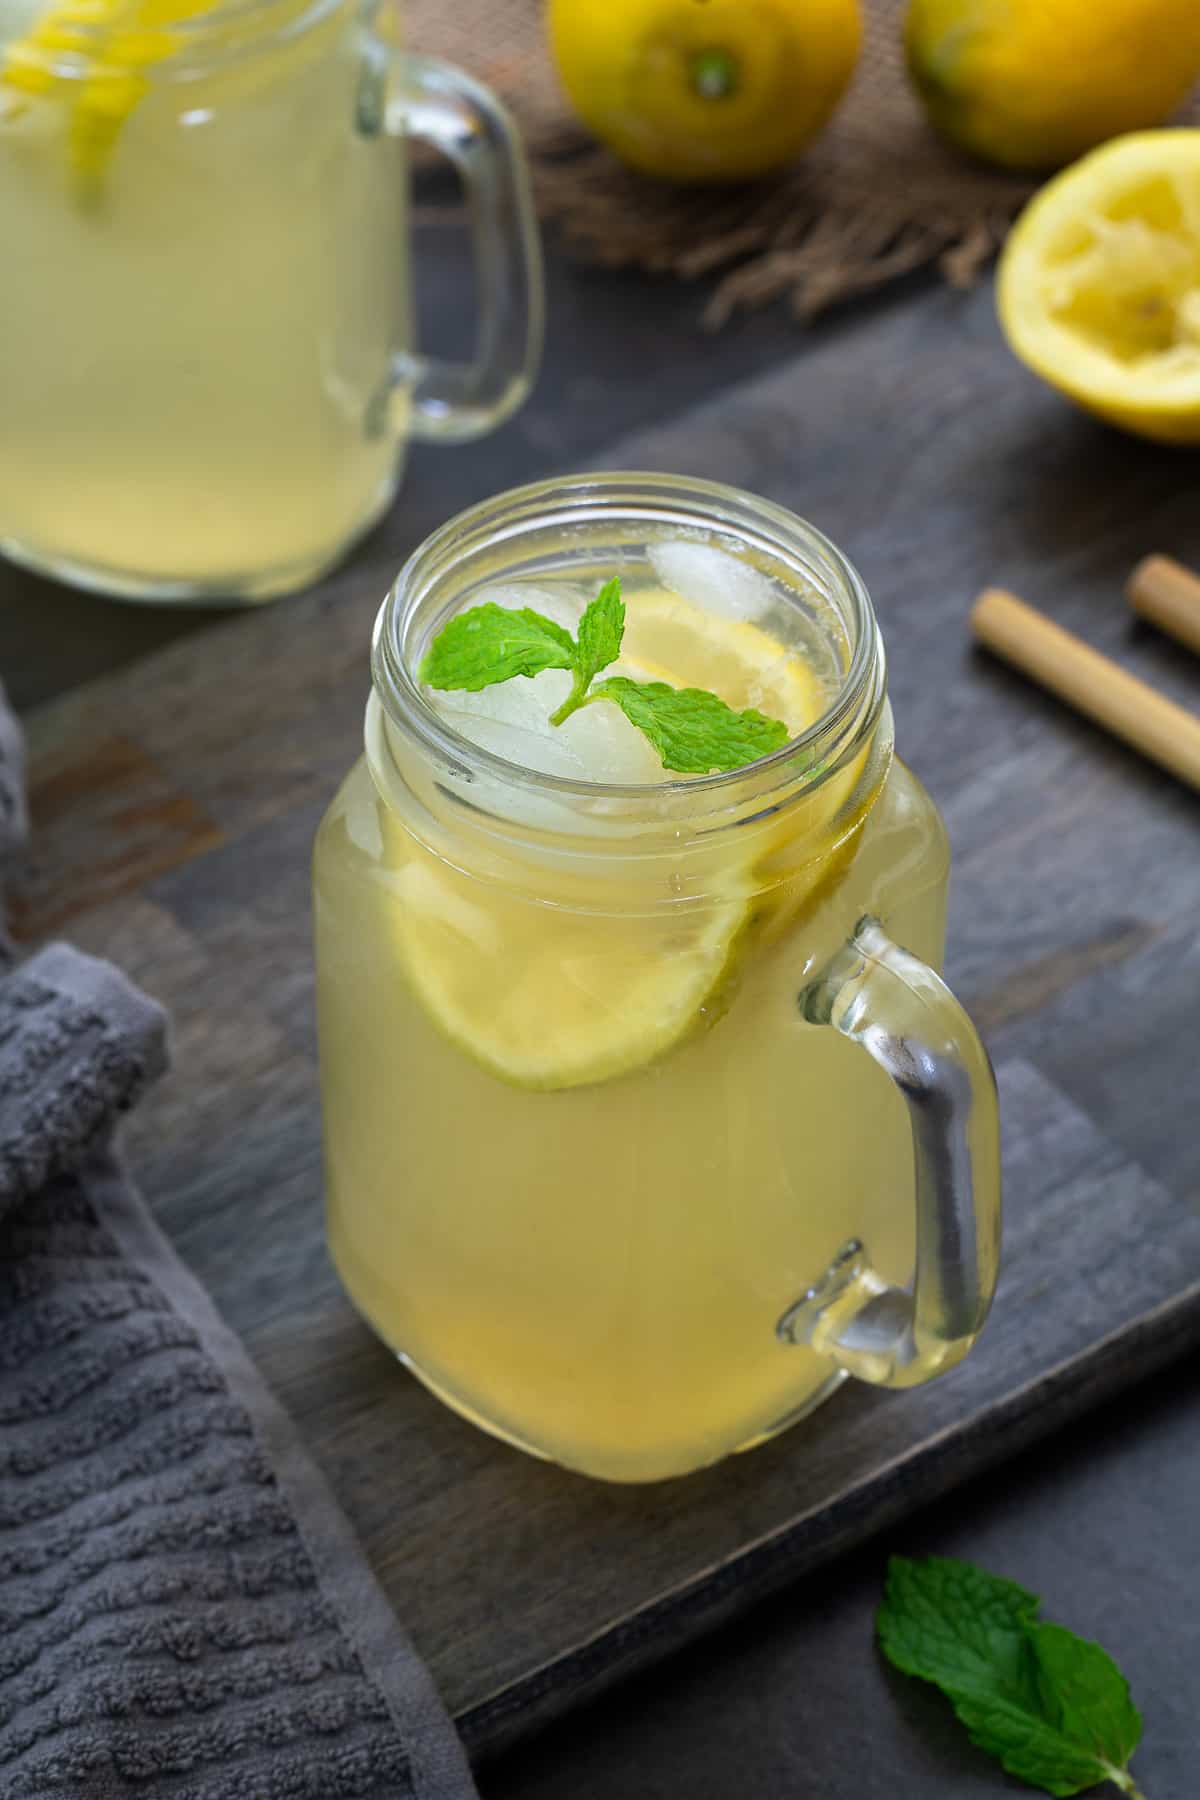 Homemade Lemonade in a serving glass mug.